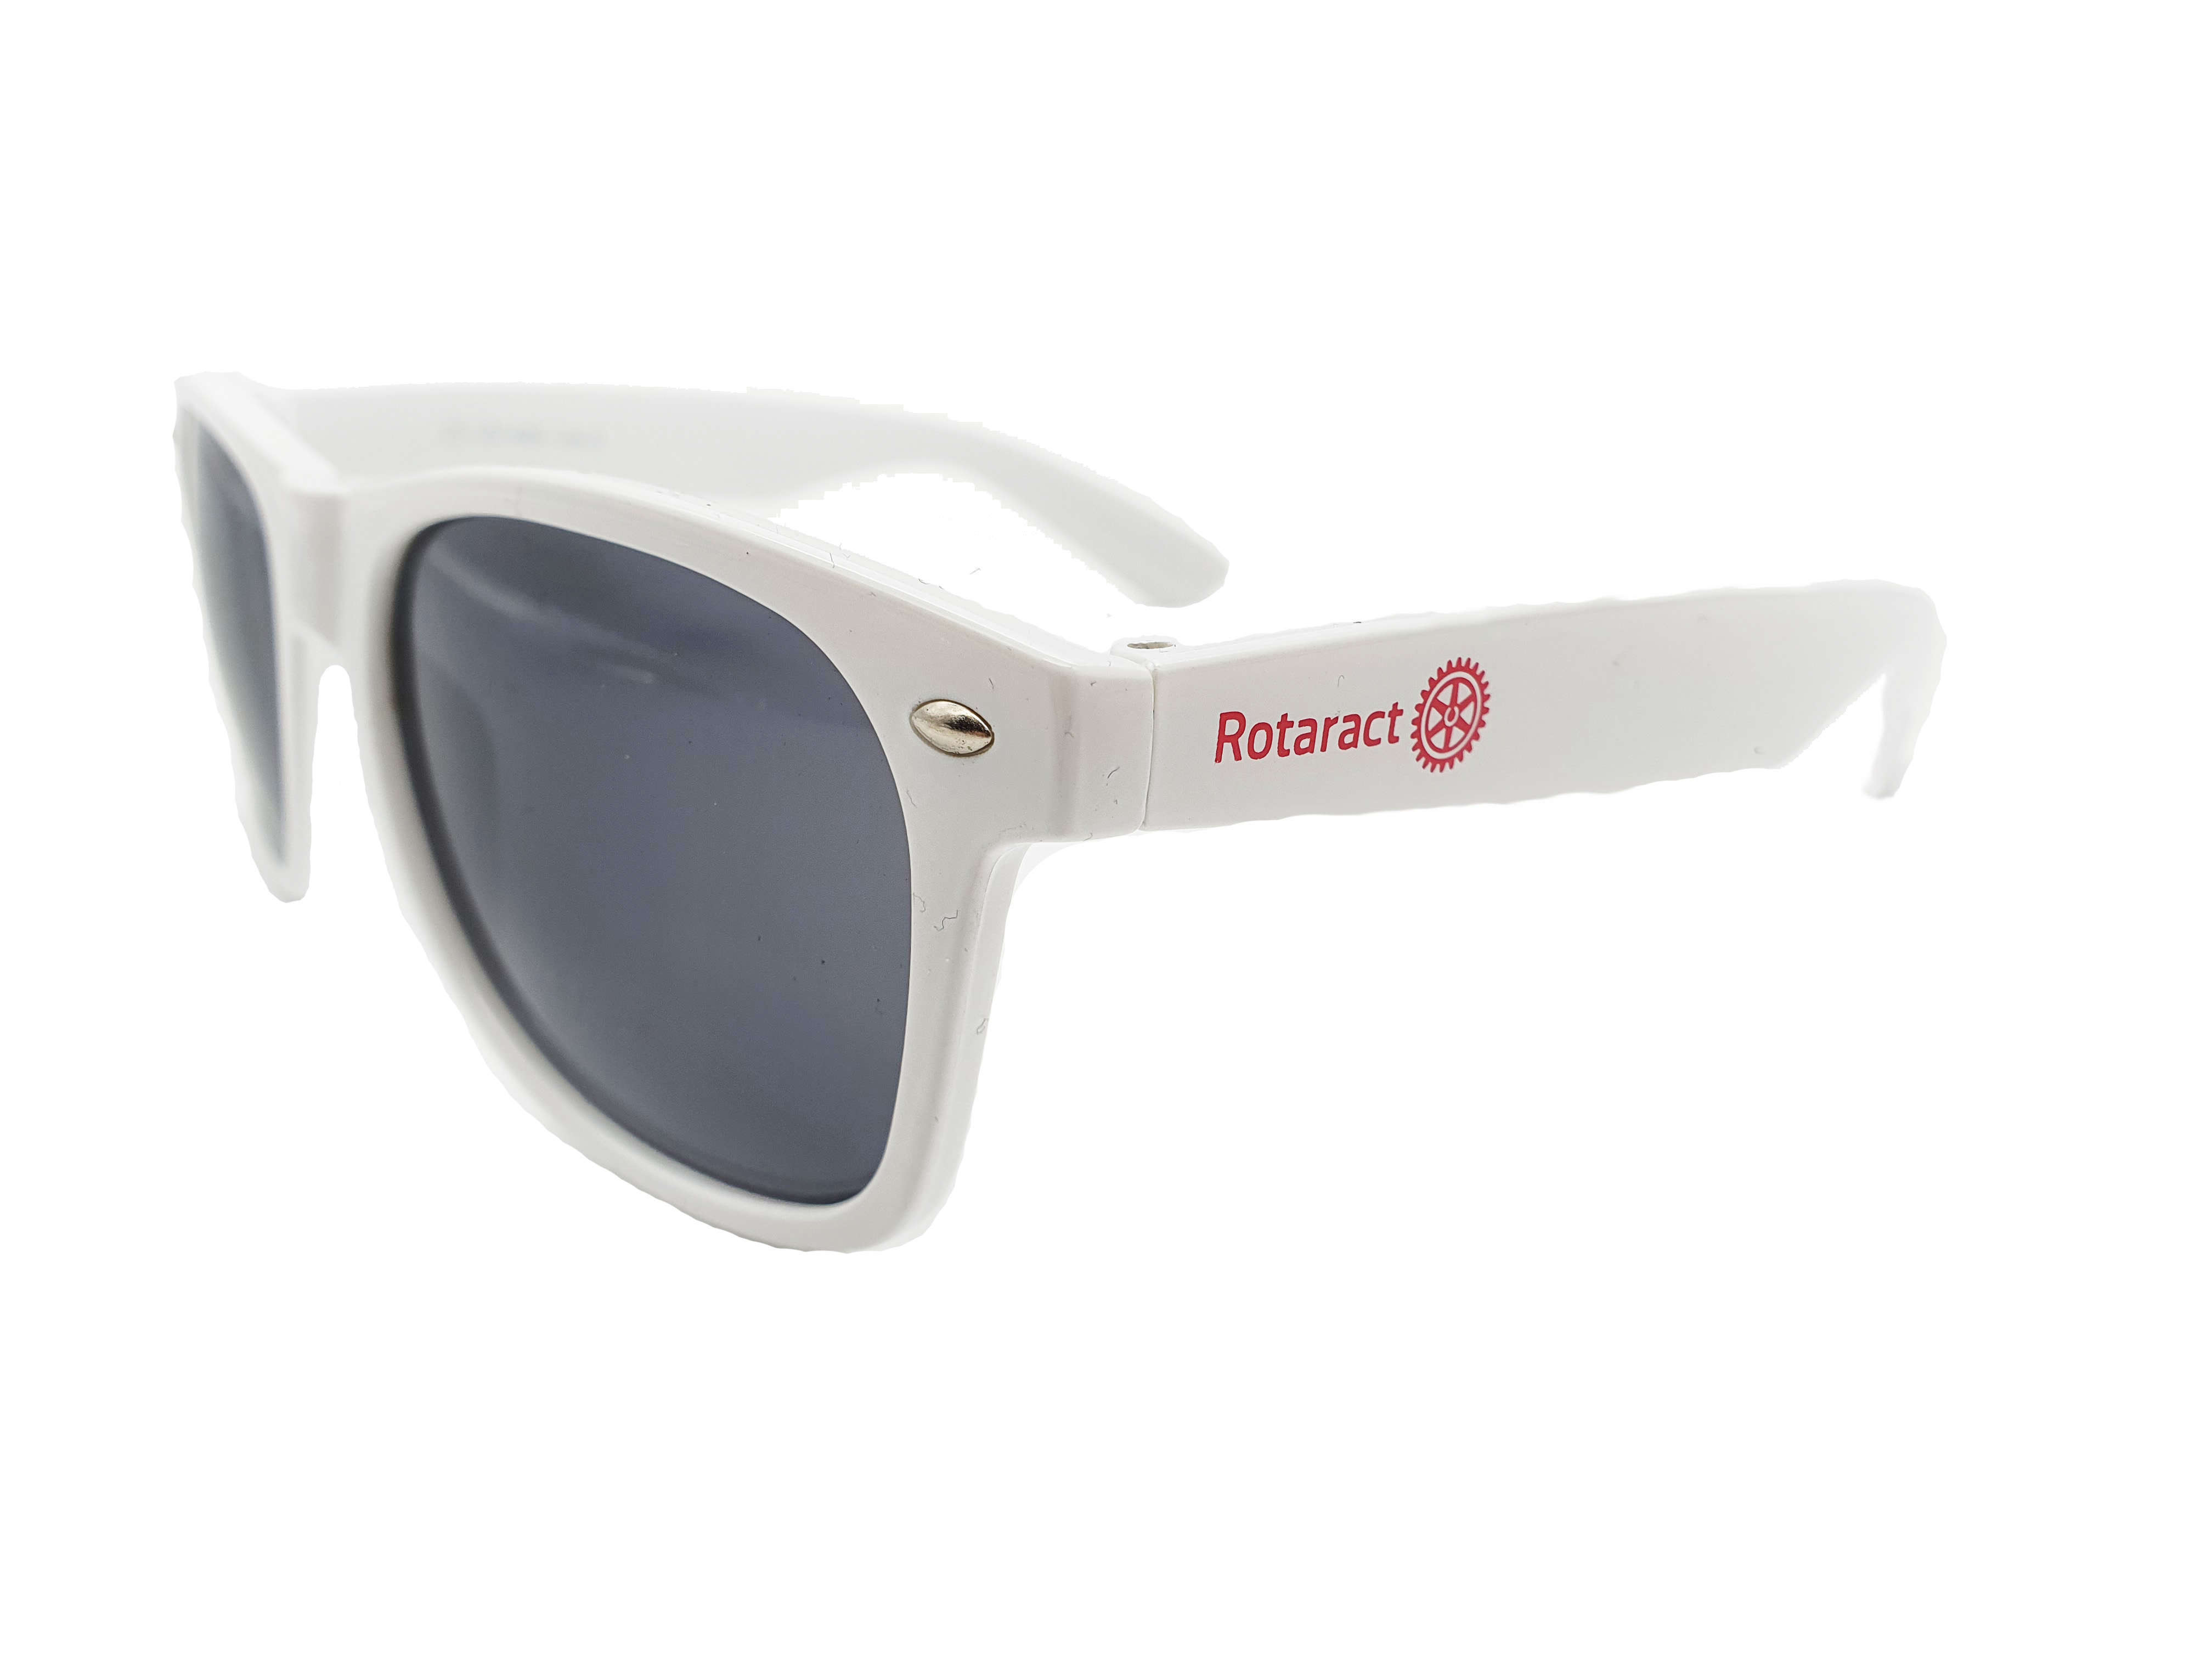 Rotaract sunglasses